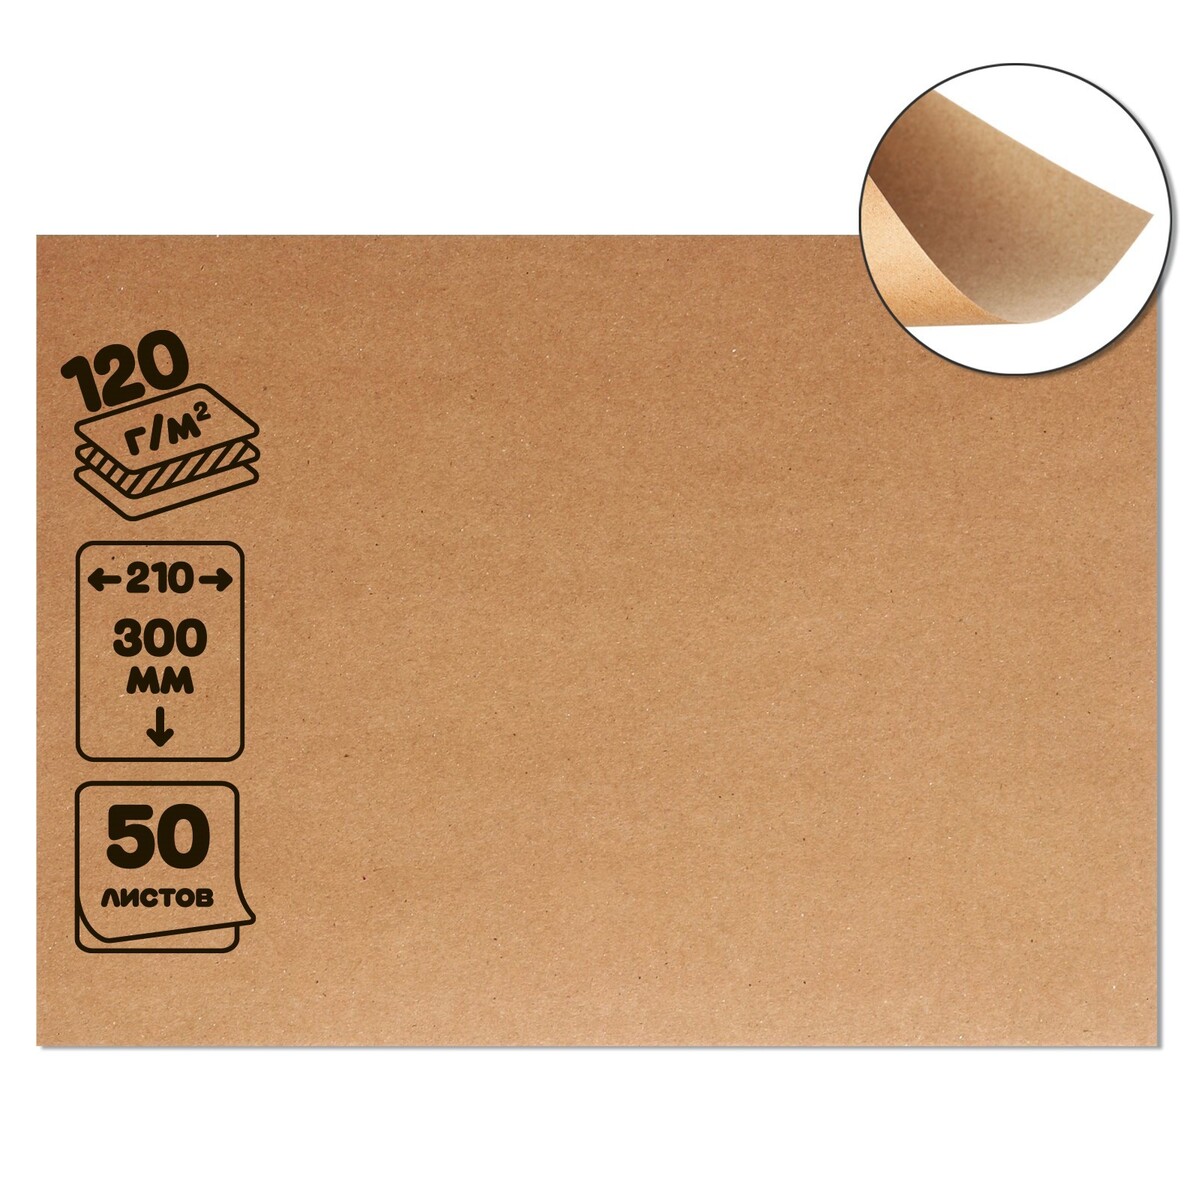 Крафт-бумага, 210 х 300 мм, 120 г/м2, набор 50 листов, коричневая/серая набор коробок 3 в 1 обратный конус крафт без крышек 19 5 20 24 10 5 15 14